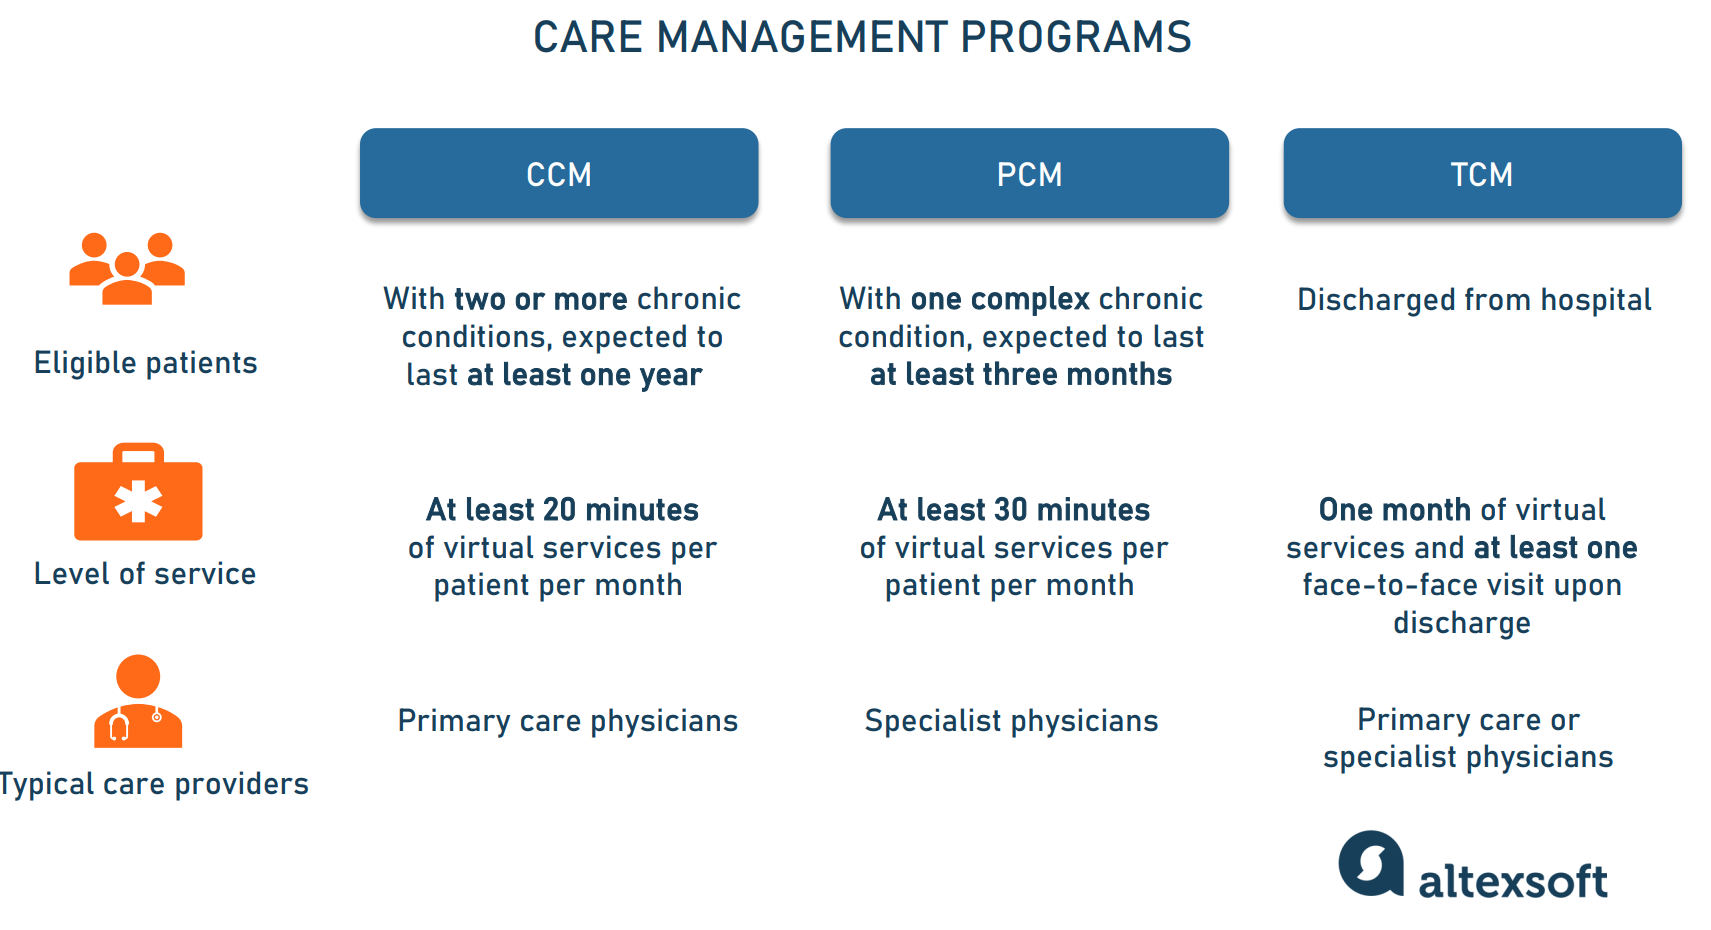 Care management programs